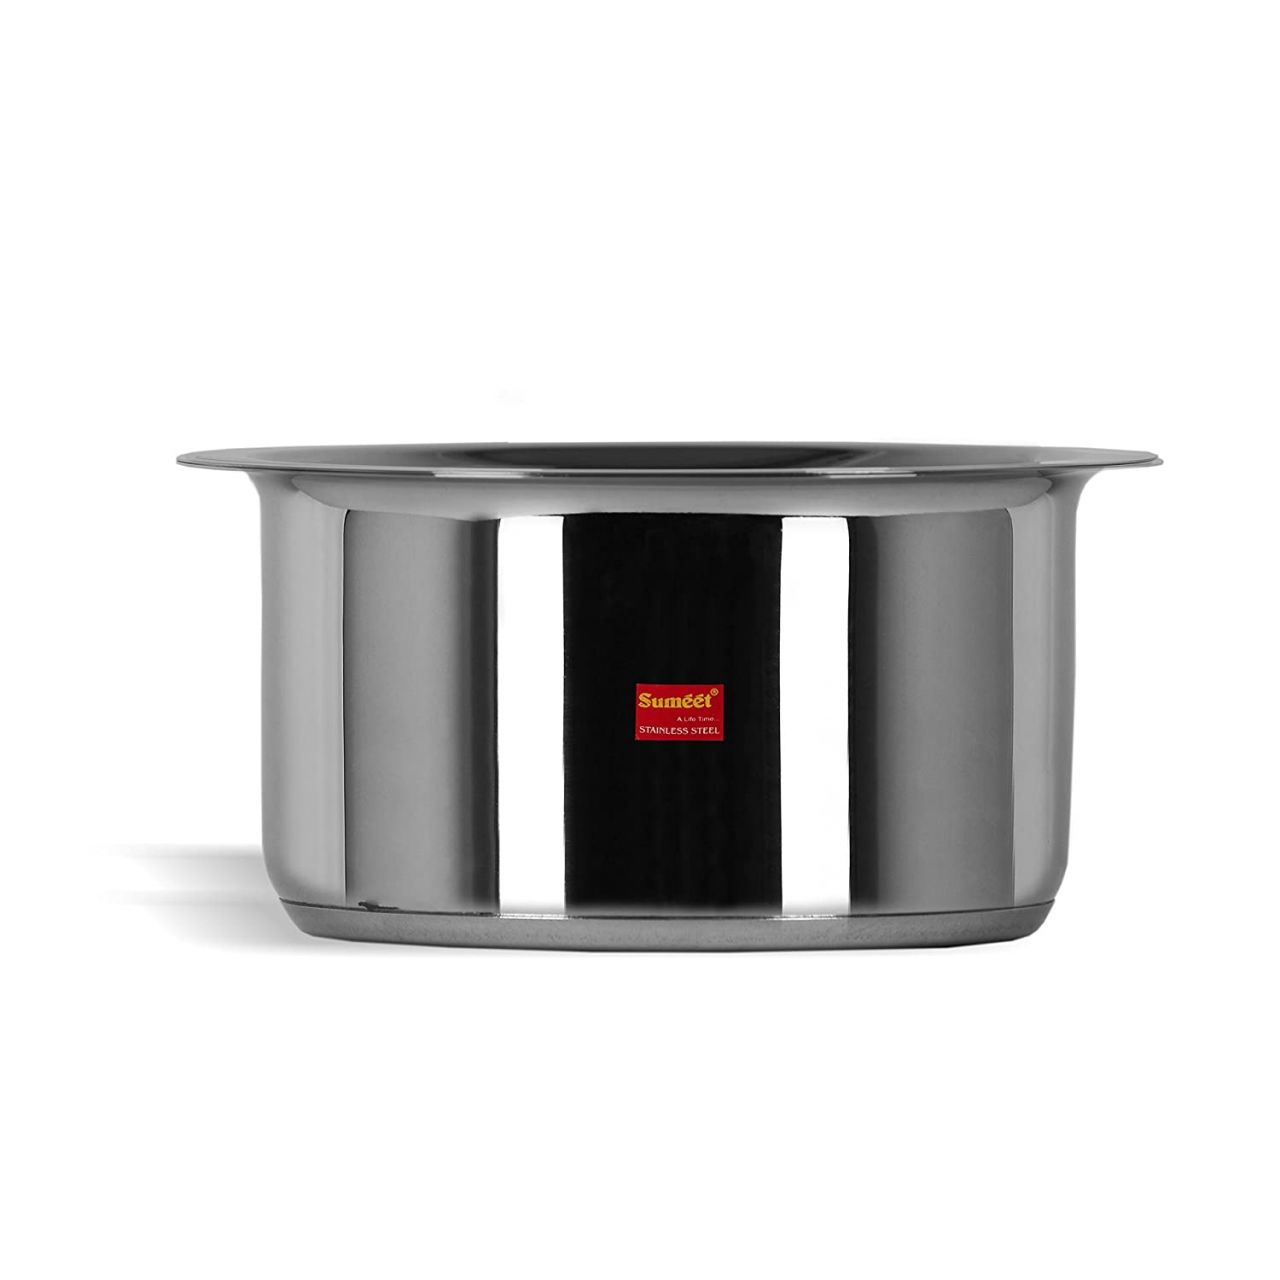 Sumeet Stainless Steel Cookware Set, 2.8 L, 1 Tope, 1 Lid (Steel)